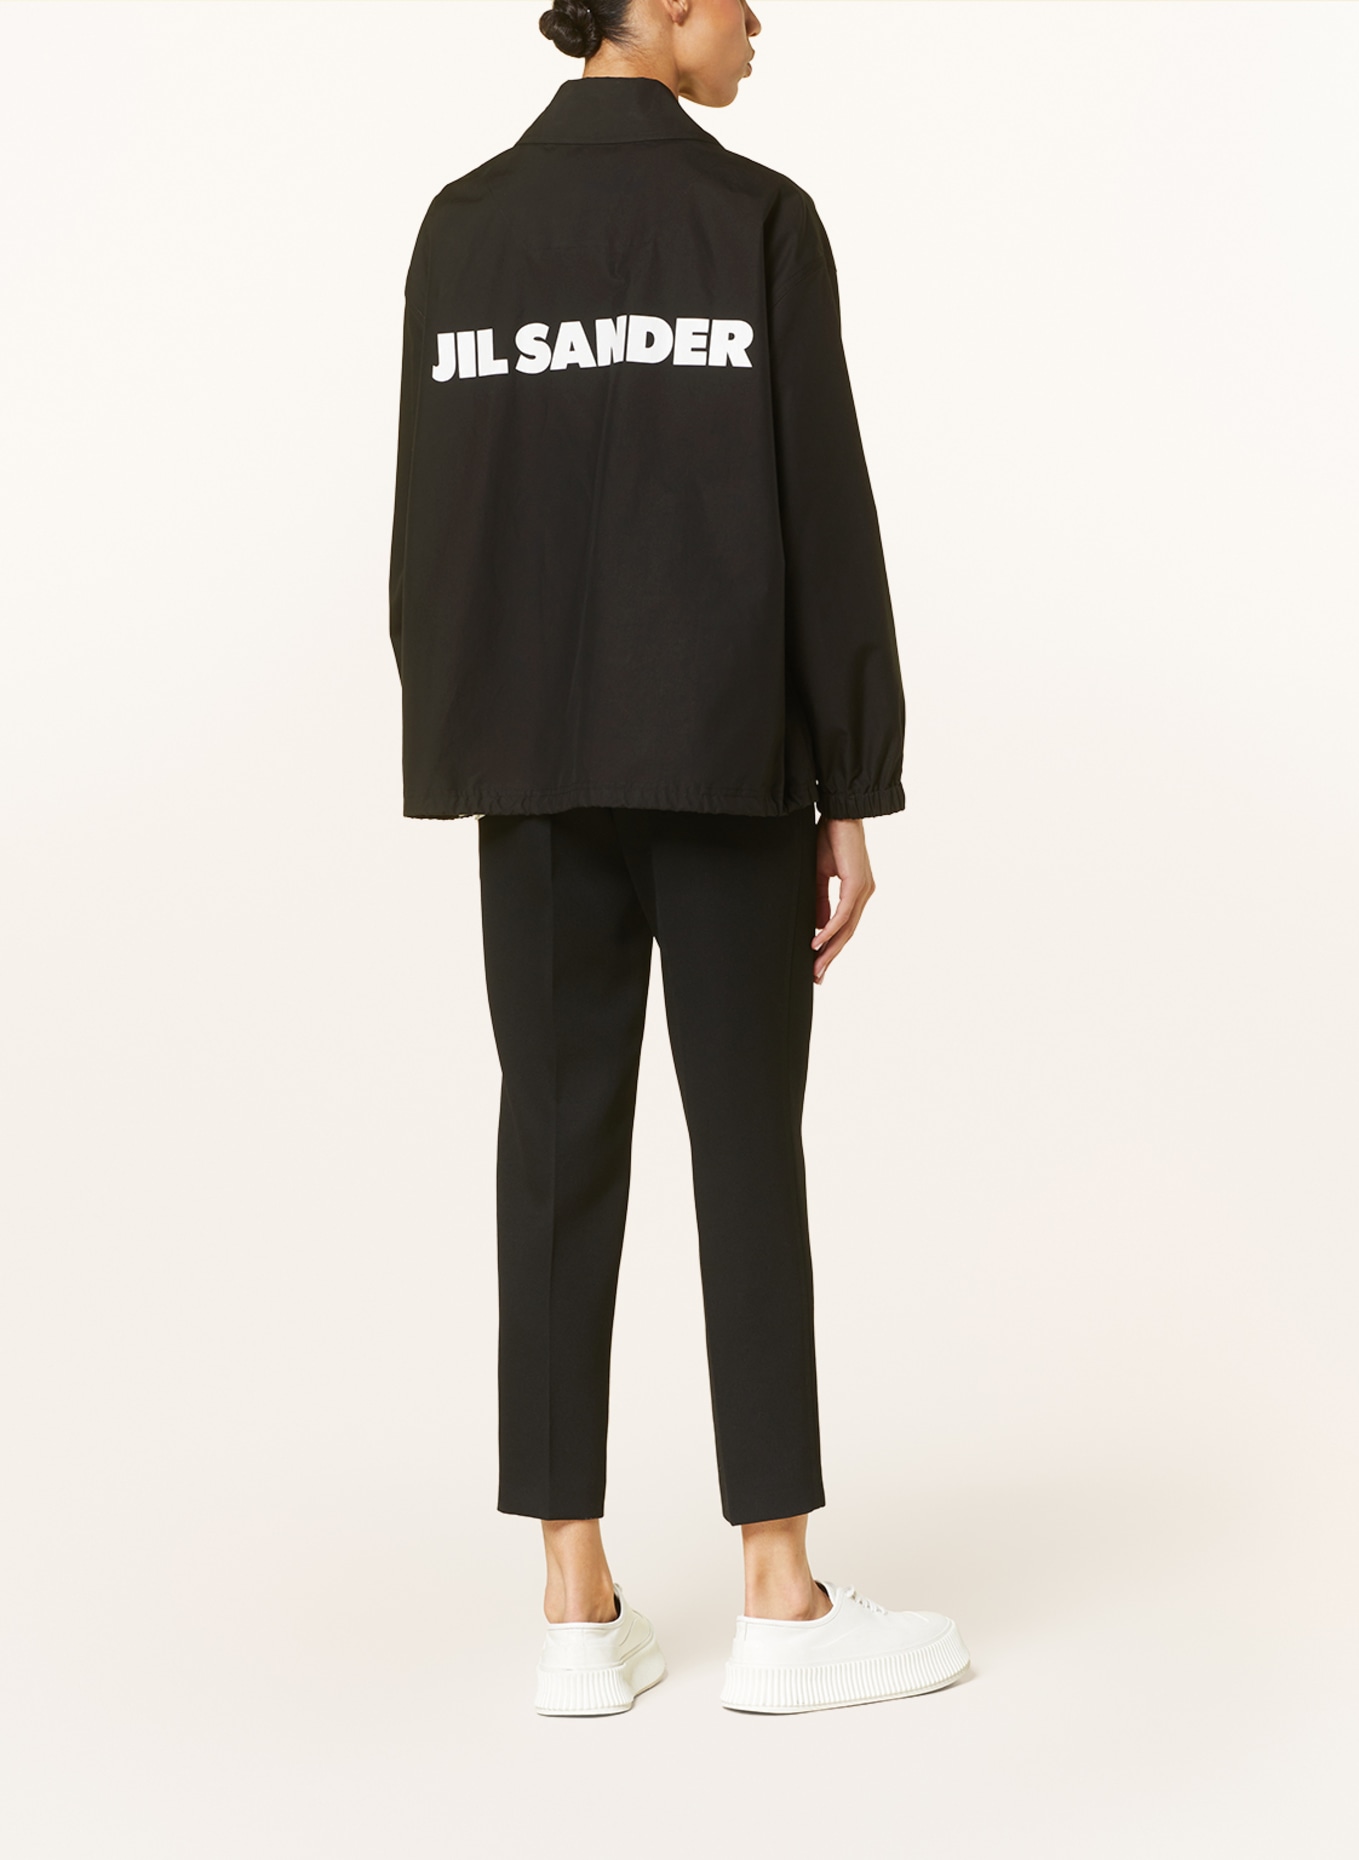 JIL SANDER Overshirt, Color: BLACK (Image 3)